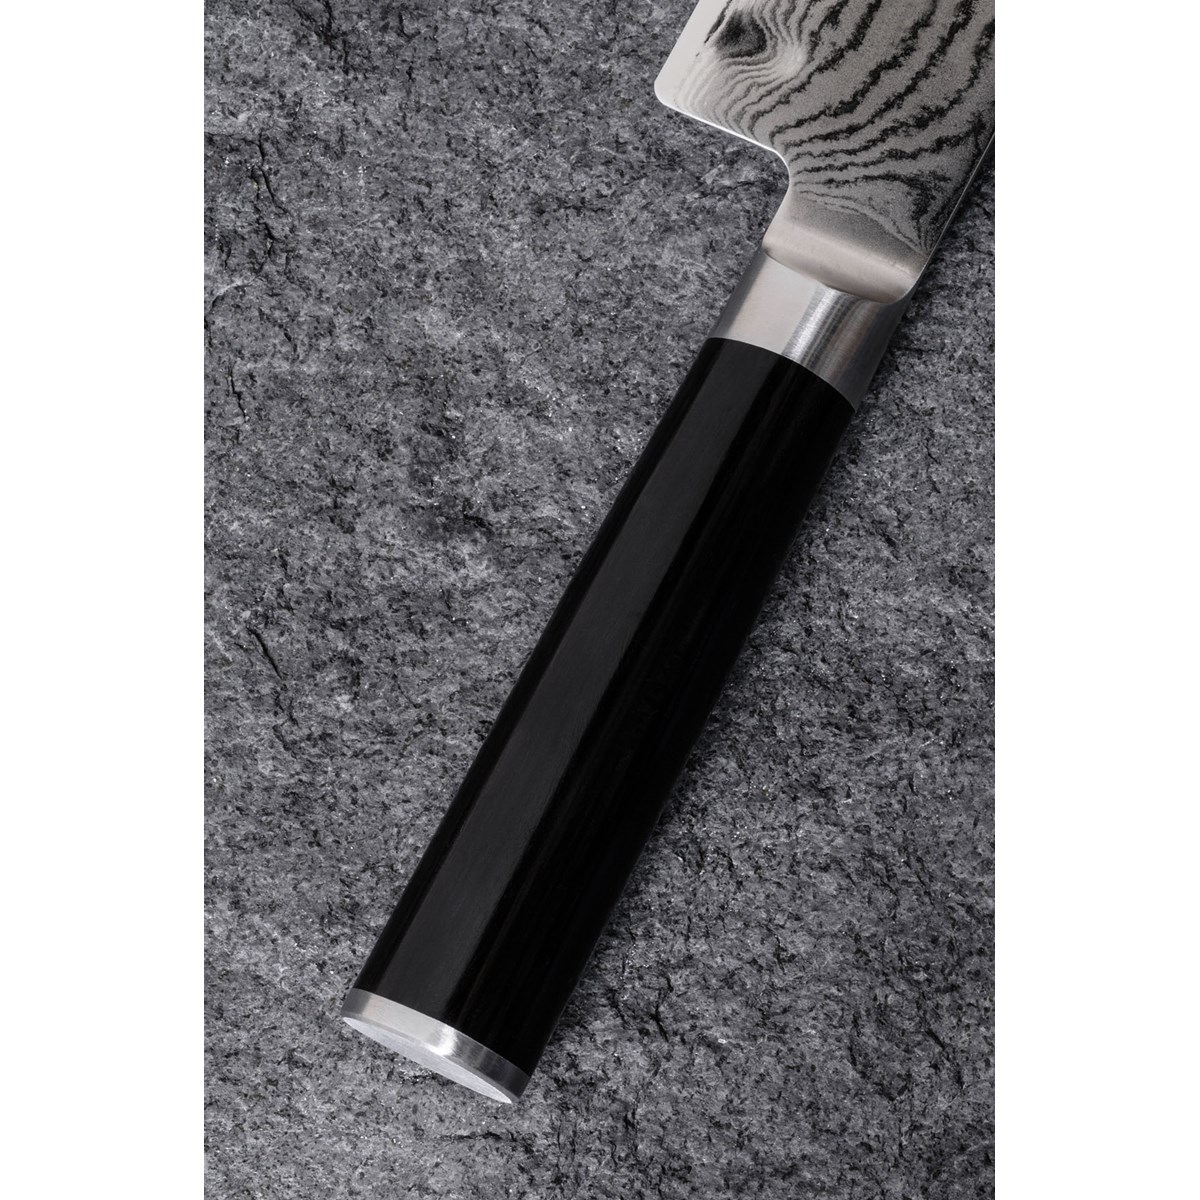 KAI, Shun Classic kokkekniv 25,5cm